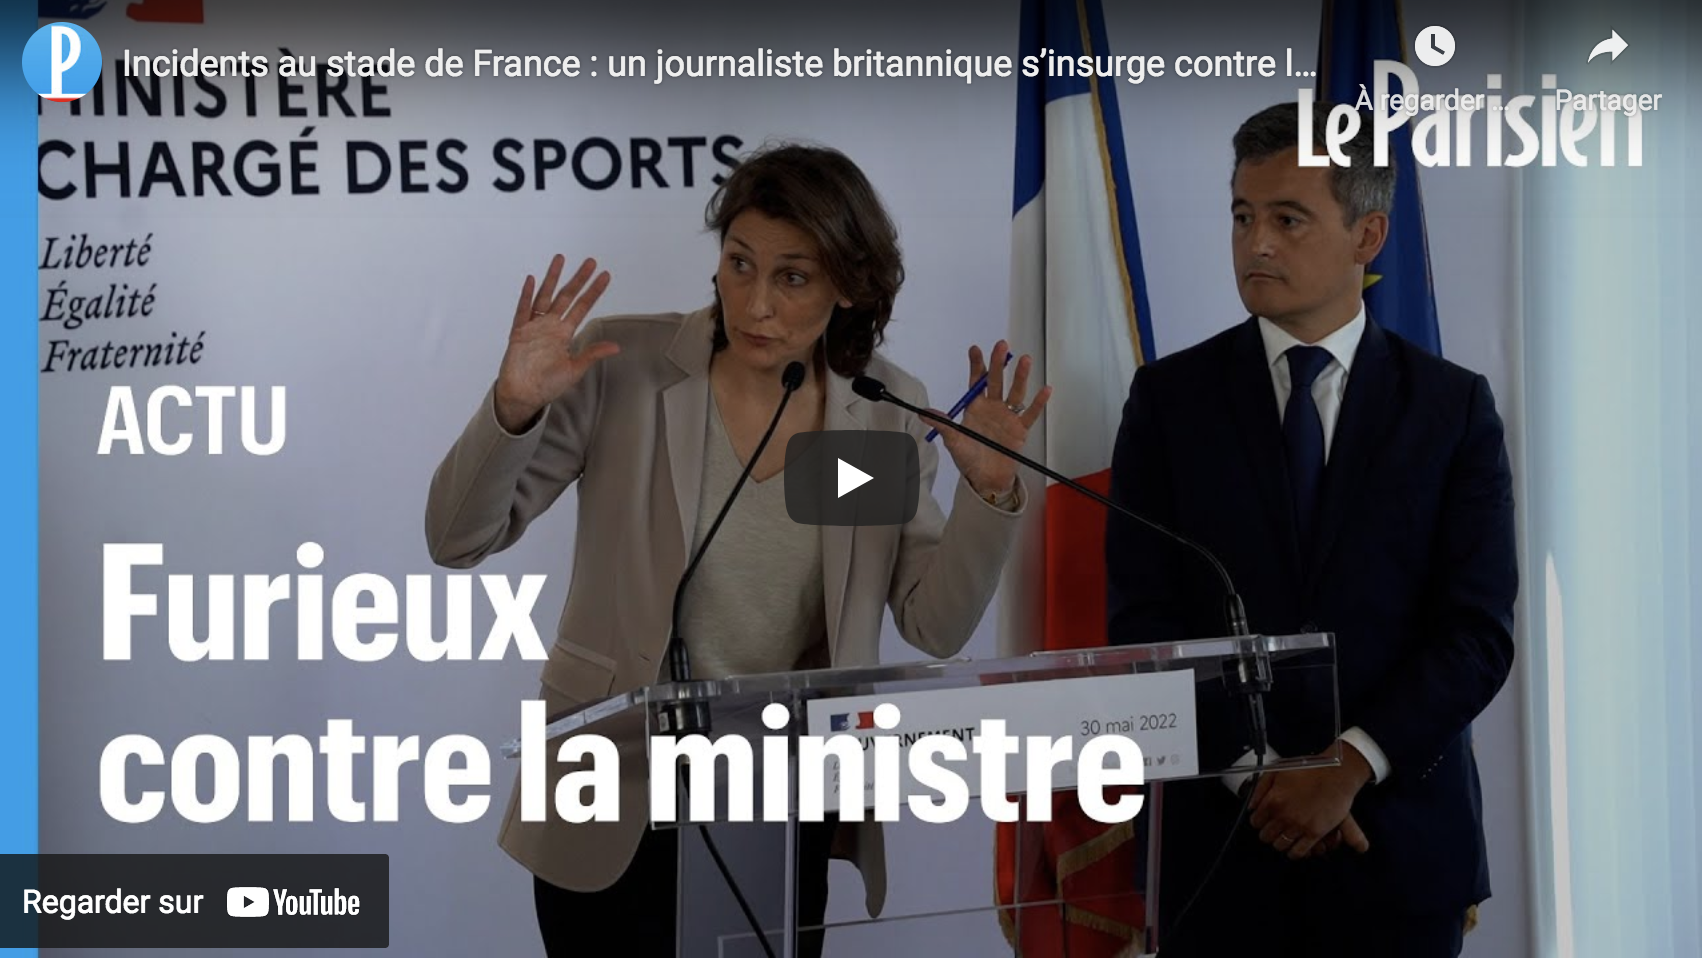 Incidents au stade de France : un journaliste britannique s’insurge contre le ministre français des Sports (VIDÉO)